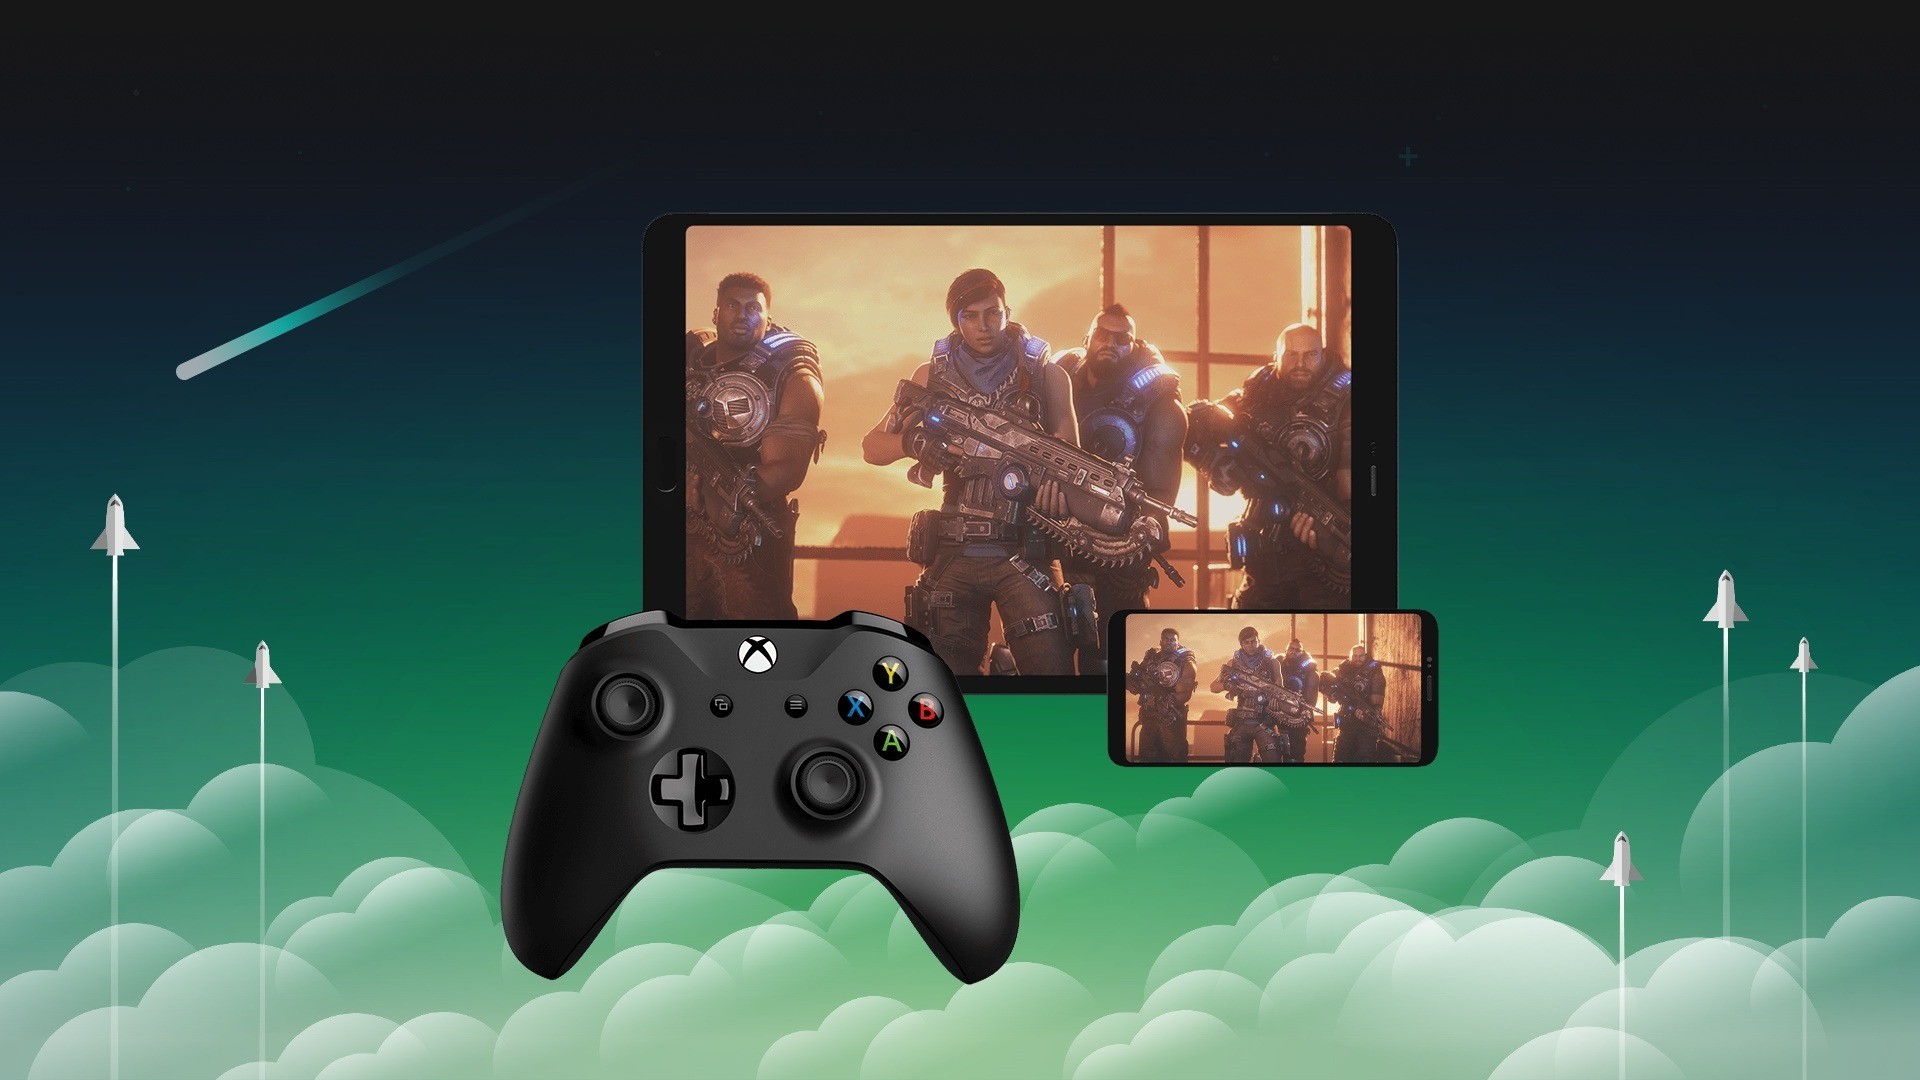 Xbox Cloud Gaming é lançado no Brasil com mais de 100 jogos - MacMagazine